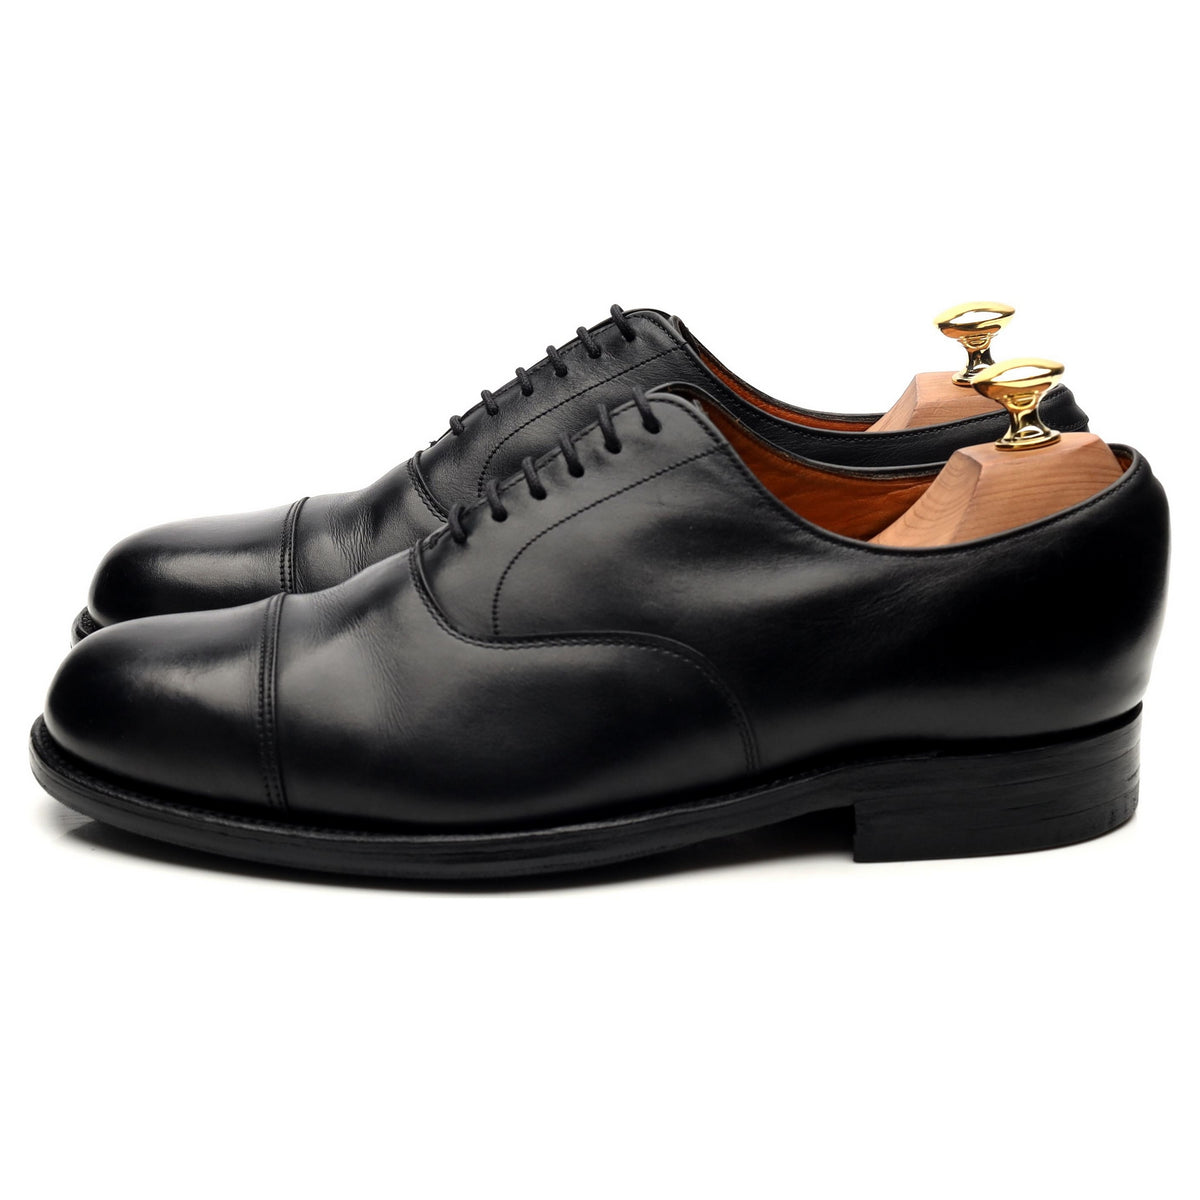 Vintage Black Leather Oxford UK 7.5 FG